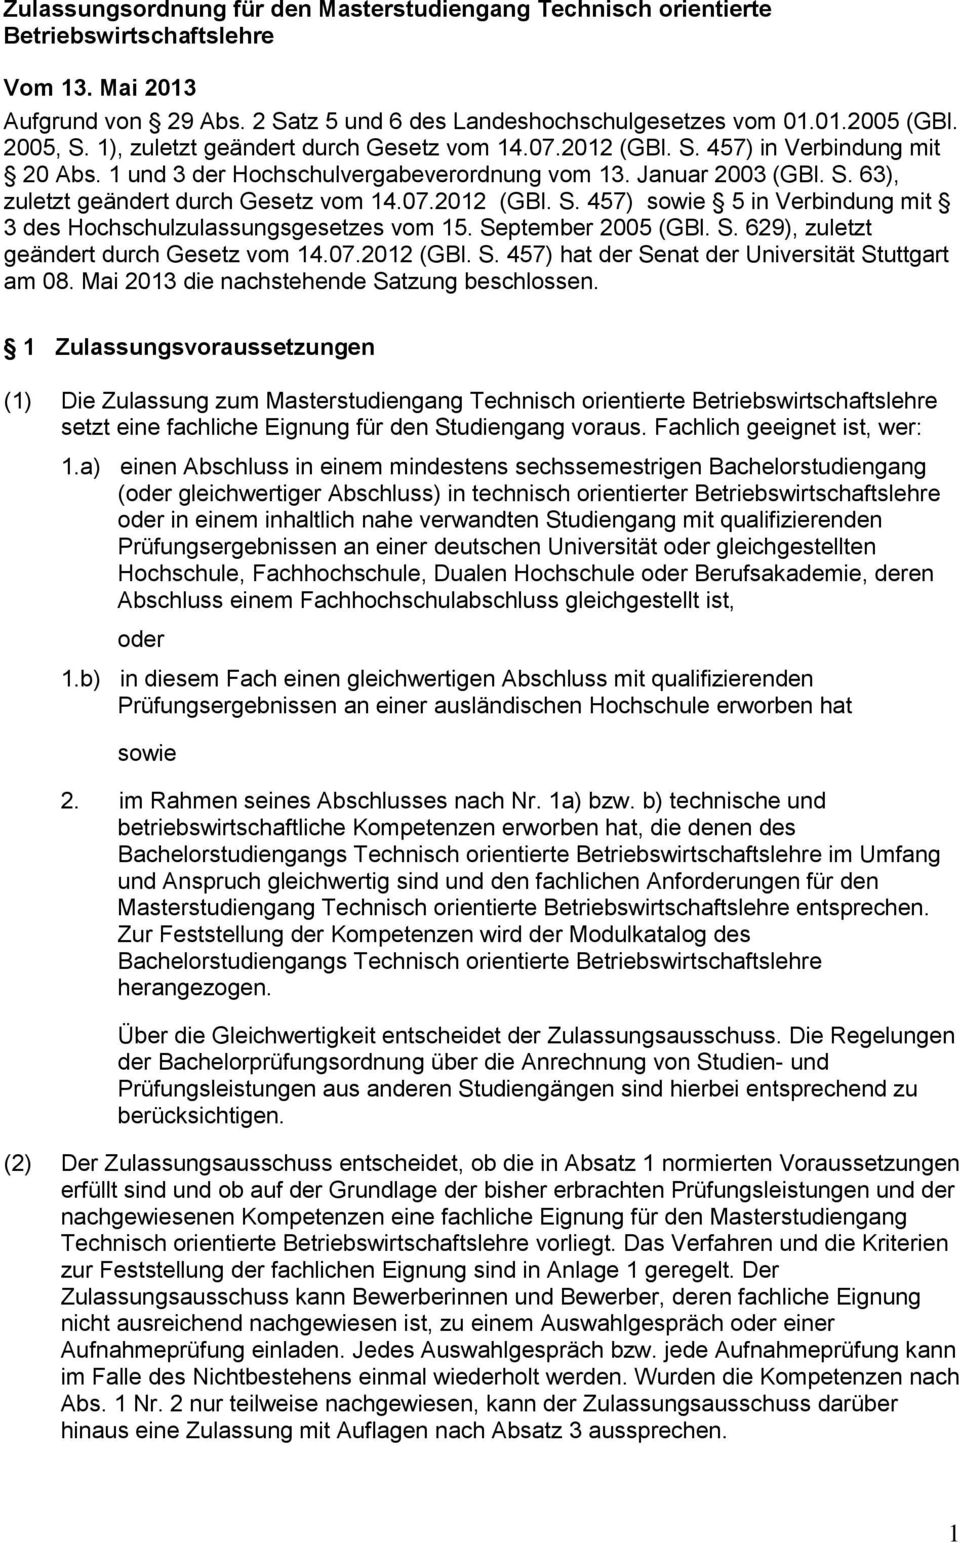 07.2012 (GBl. S. 457) sowie 5 in Verbindung mit 3 des Hochschulzulassungsgesetzes vom 15. September 2005 (GBl. S. 629), zuletzt geändert durch Gesetz vom 14.07.2012 (GBl. S. 457) hat der Senat der Universität Stuttgart am 08.